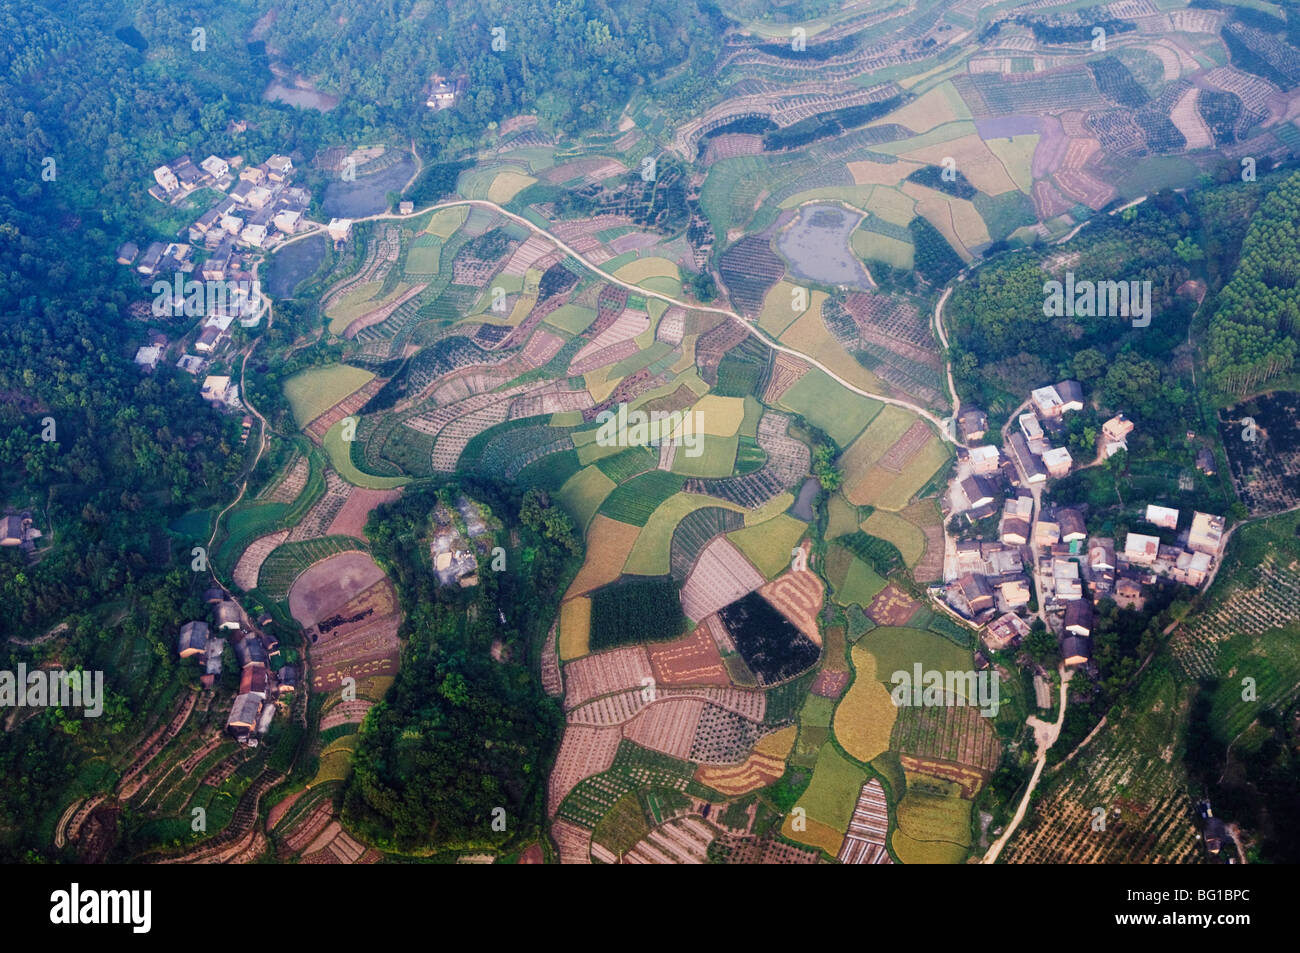 Vue aérienne d'un ballon à air chaud de rizières et de villages dans la région de Yangshuo, près de Guilin, Guangxi Province, China, Asia Banque D'Images